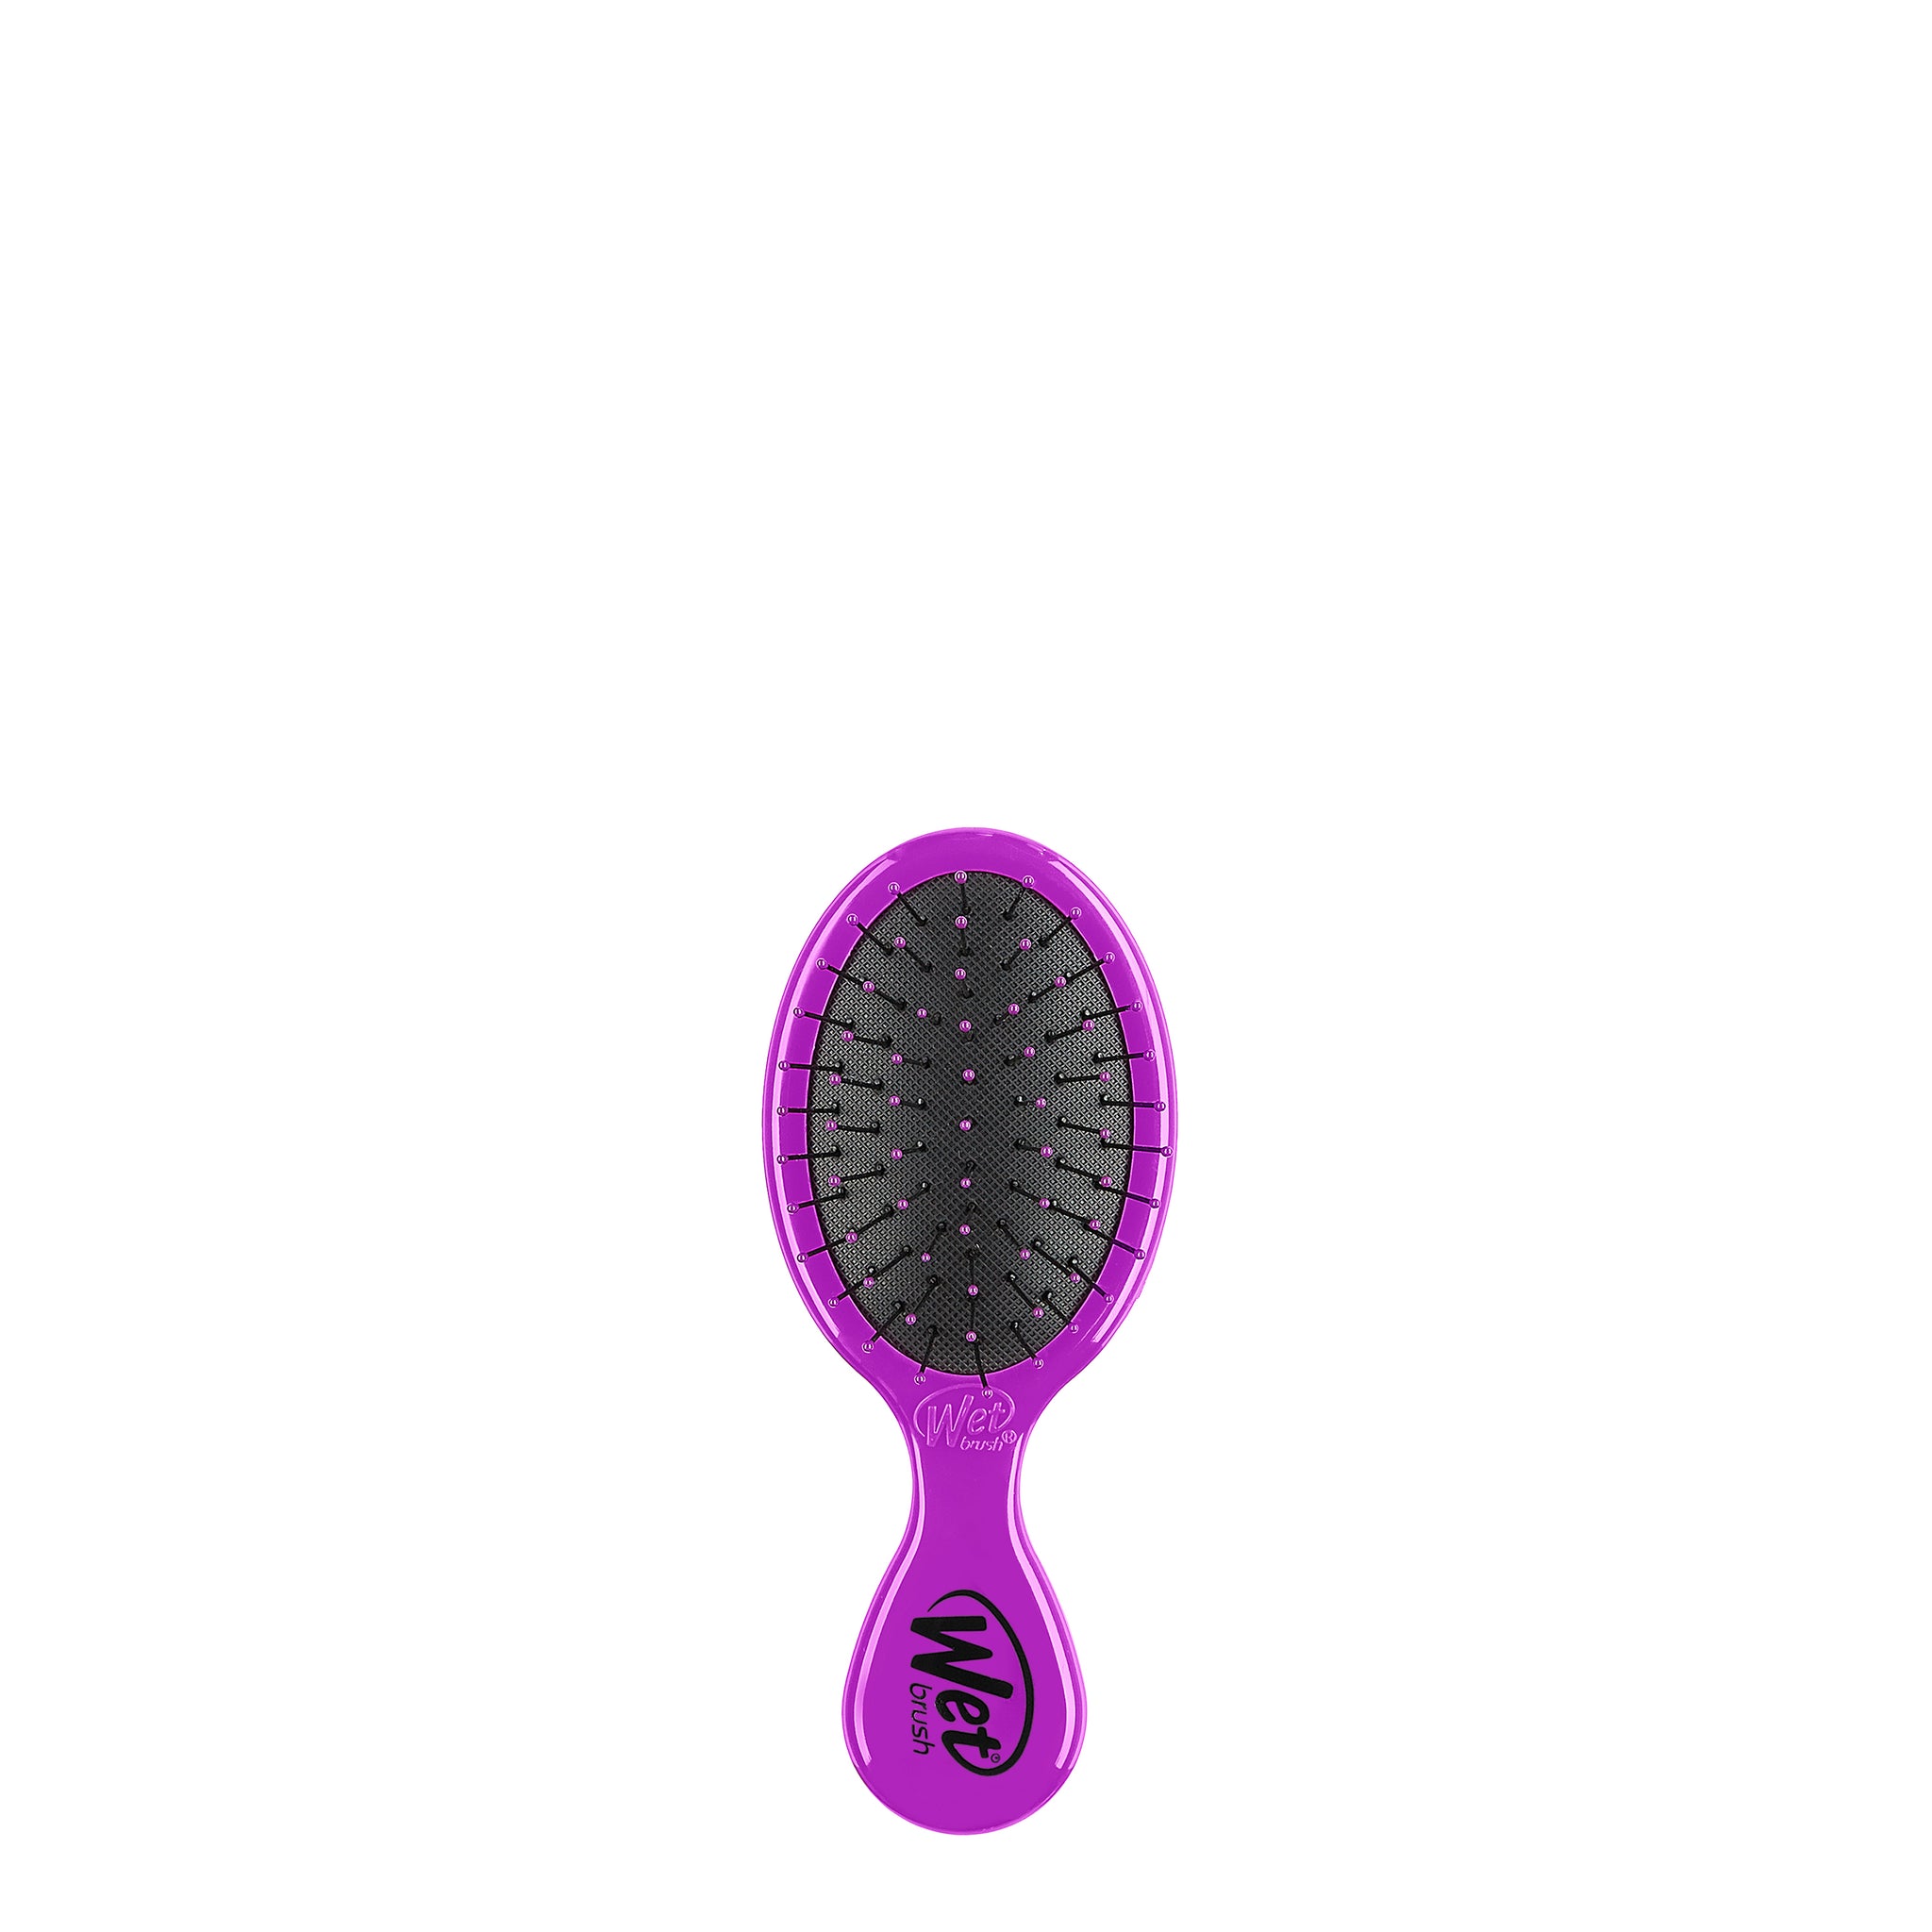 SC X Wetbrush Mini Detangler Hair Brush - SEPHORA COLLECTION